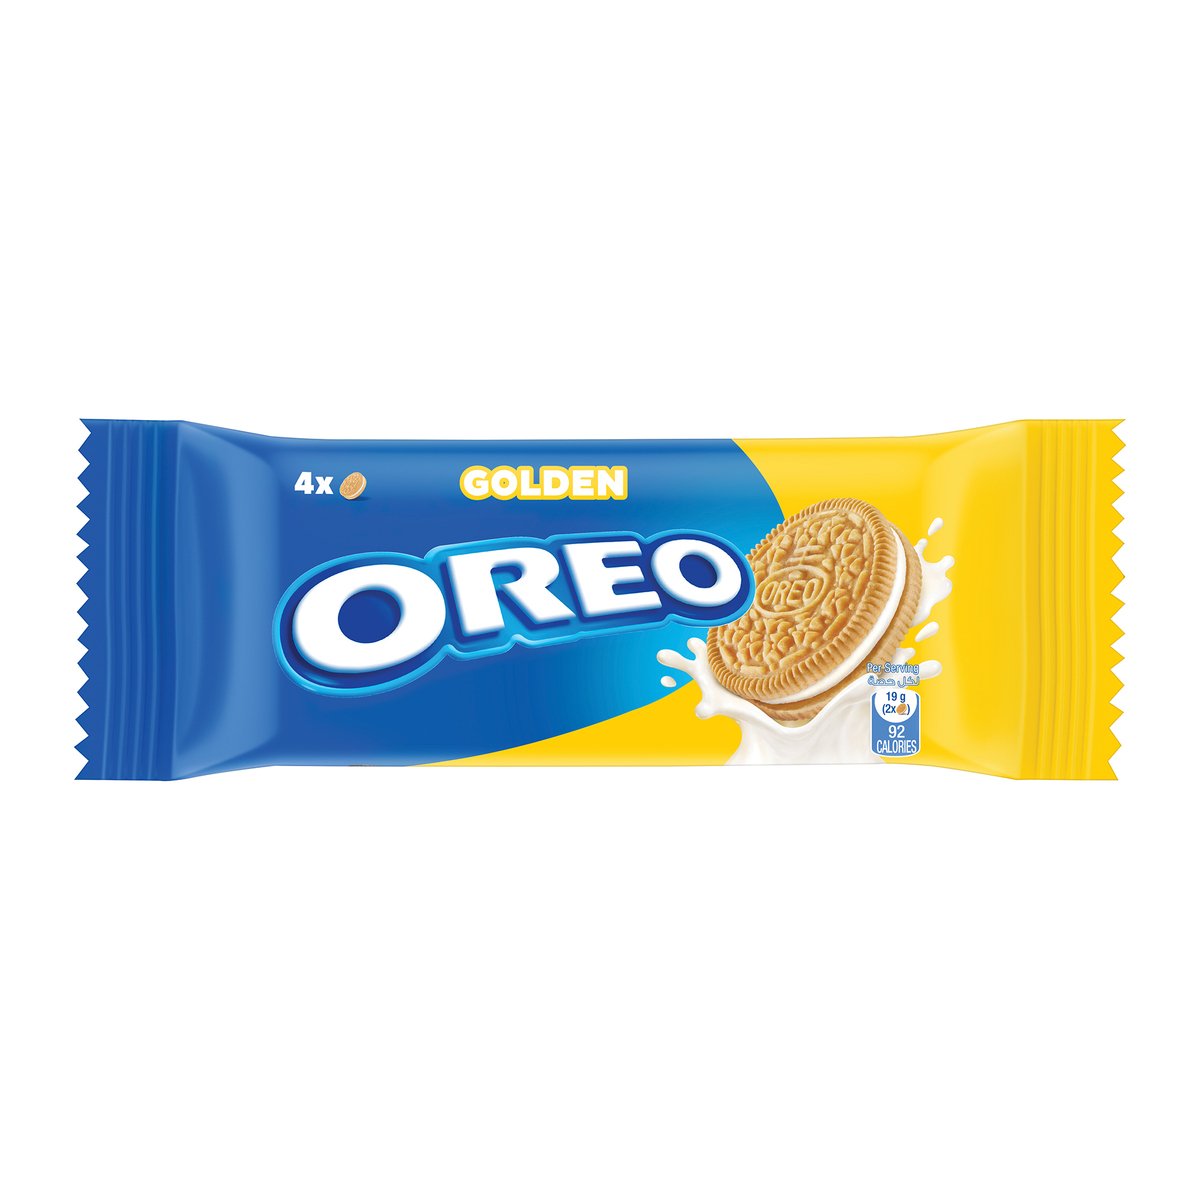 Oreo Golden Cookie Biscuit 38g